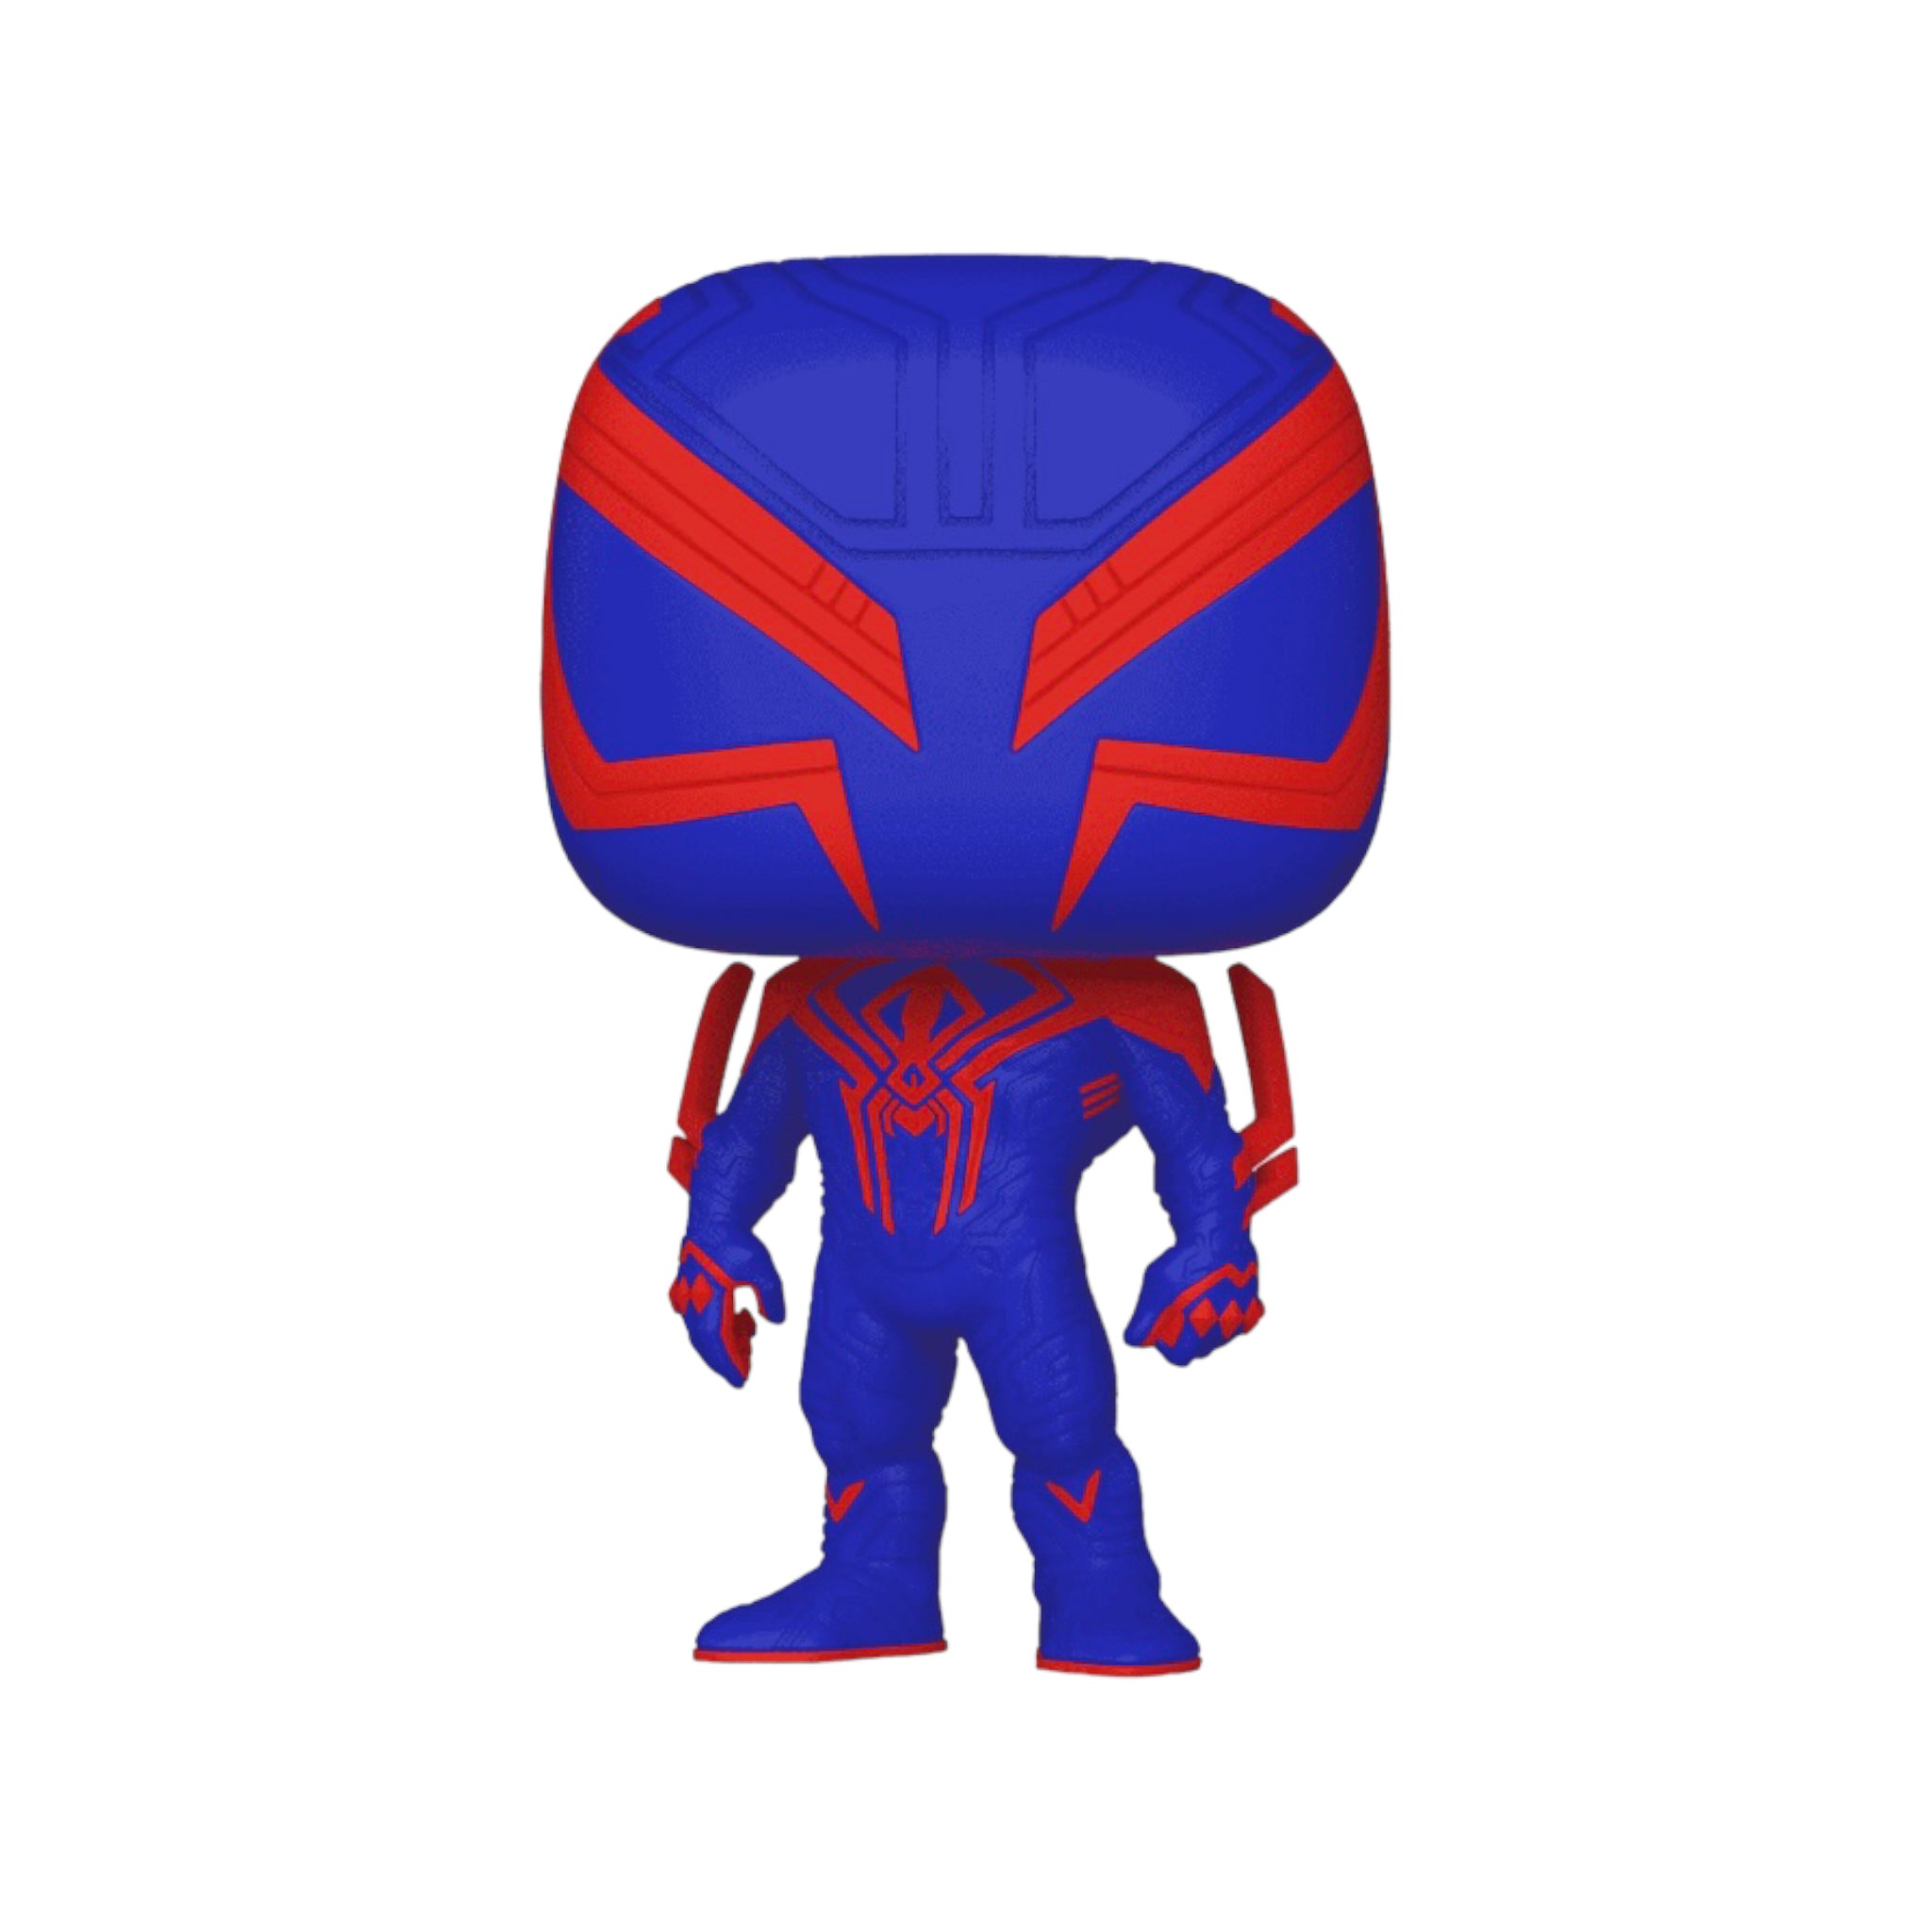 Spider-Man 2099 #1225 Funko Pop! - Spider-Man Across The Spider-verse